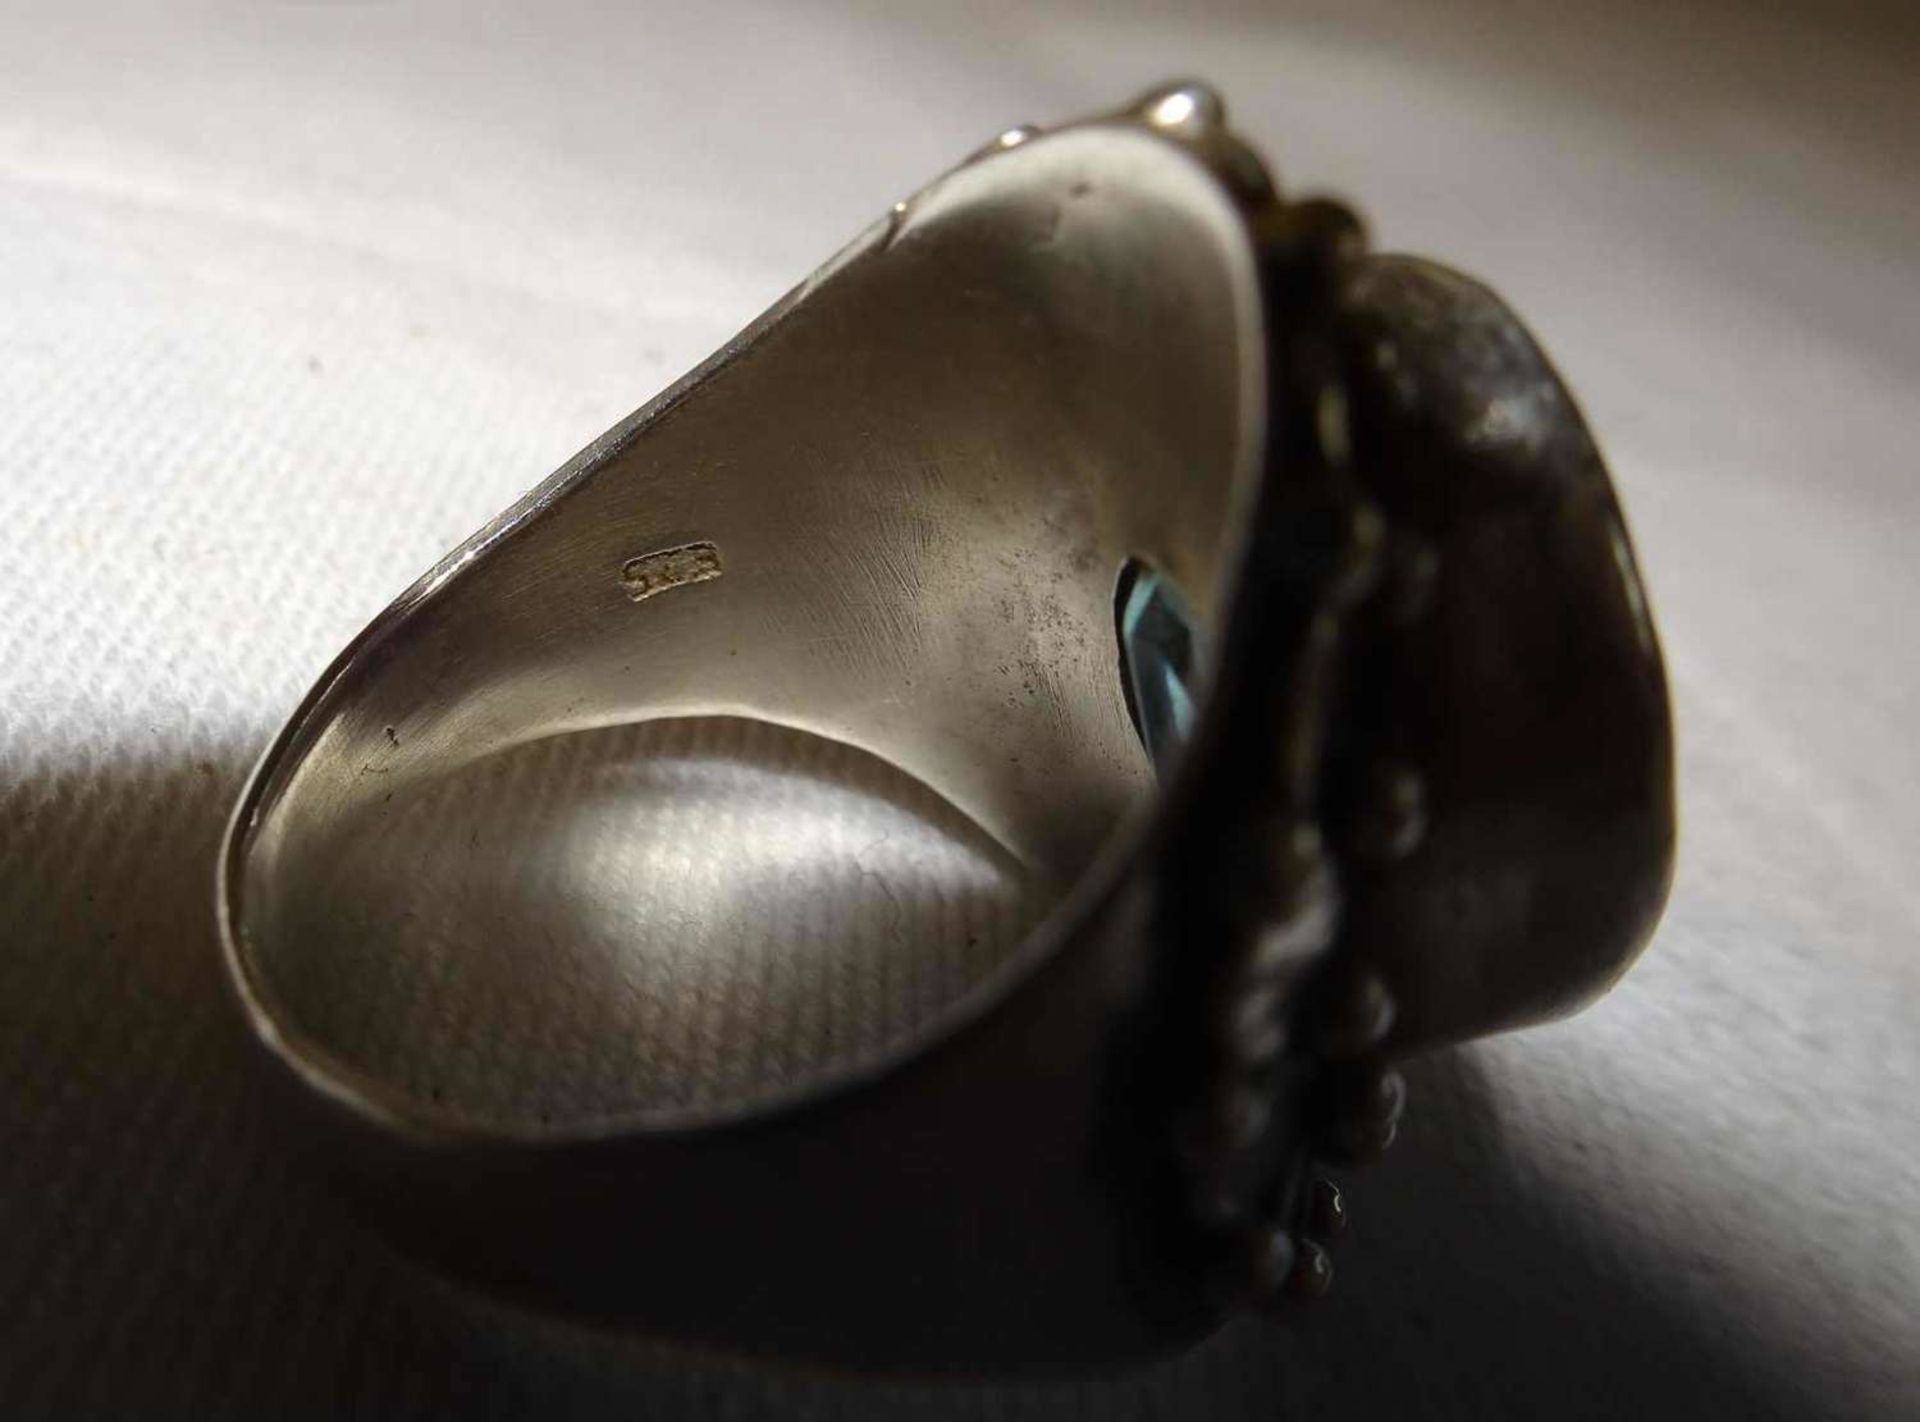 Damenring, 925er Silber, besetzt mit 1 Aquamarin. Handarbeit. Ringgröße 52, Gewicht ca. 9,3 gr. - Image 3 of 3